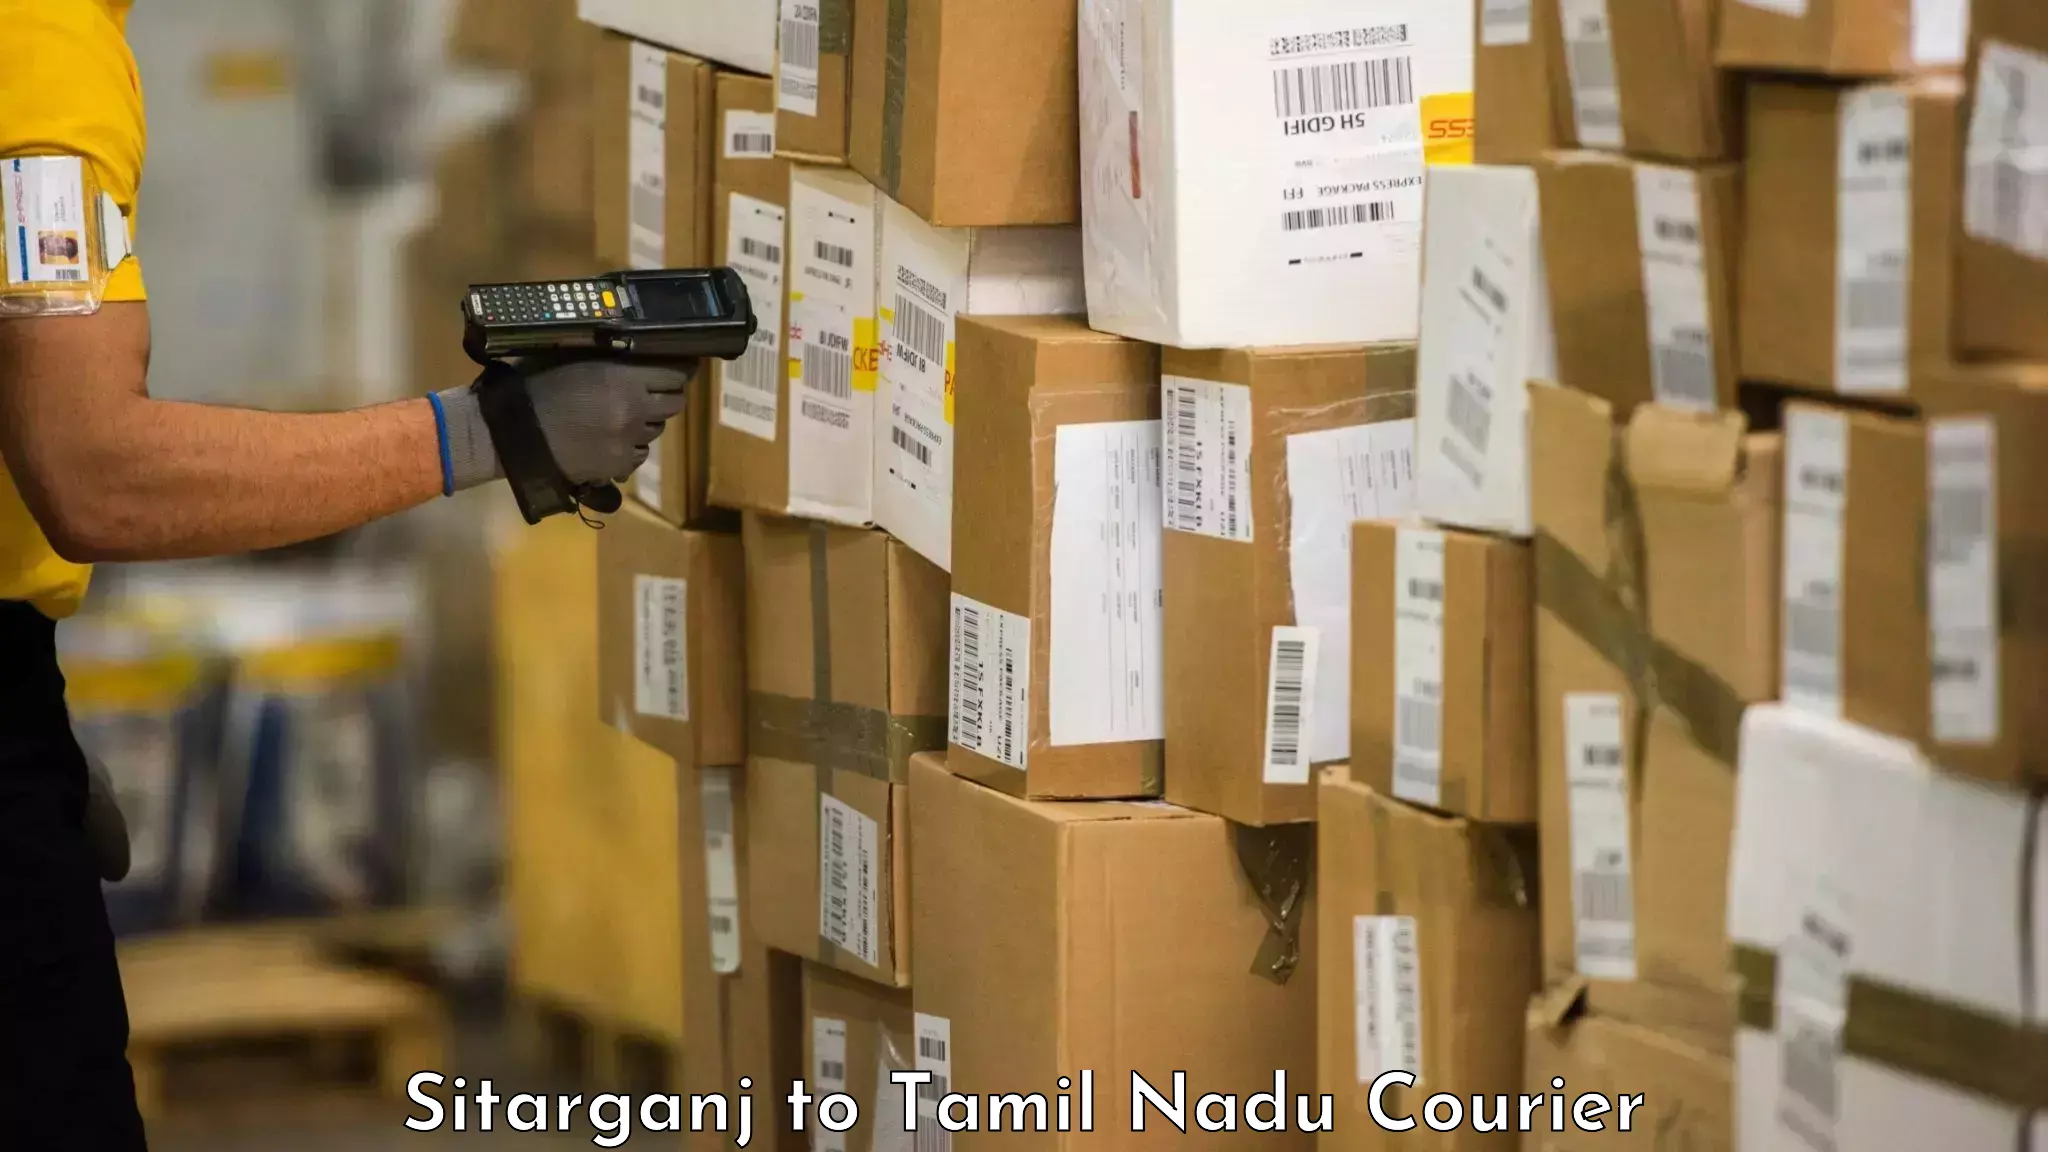 Baggage shipping service Sitarganj to Tamil Nadu